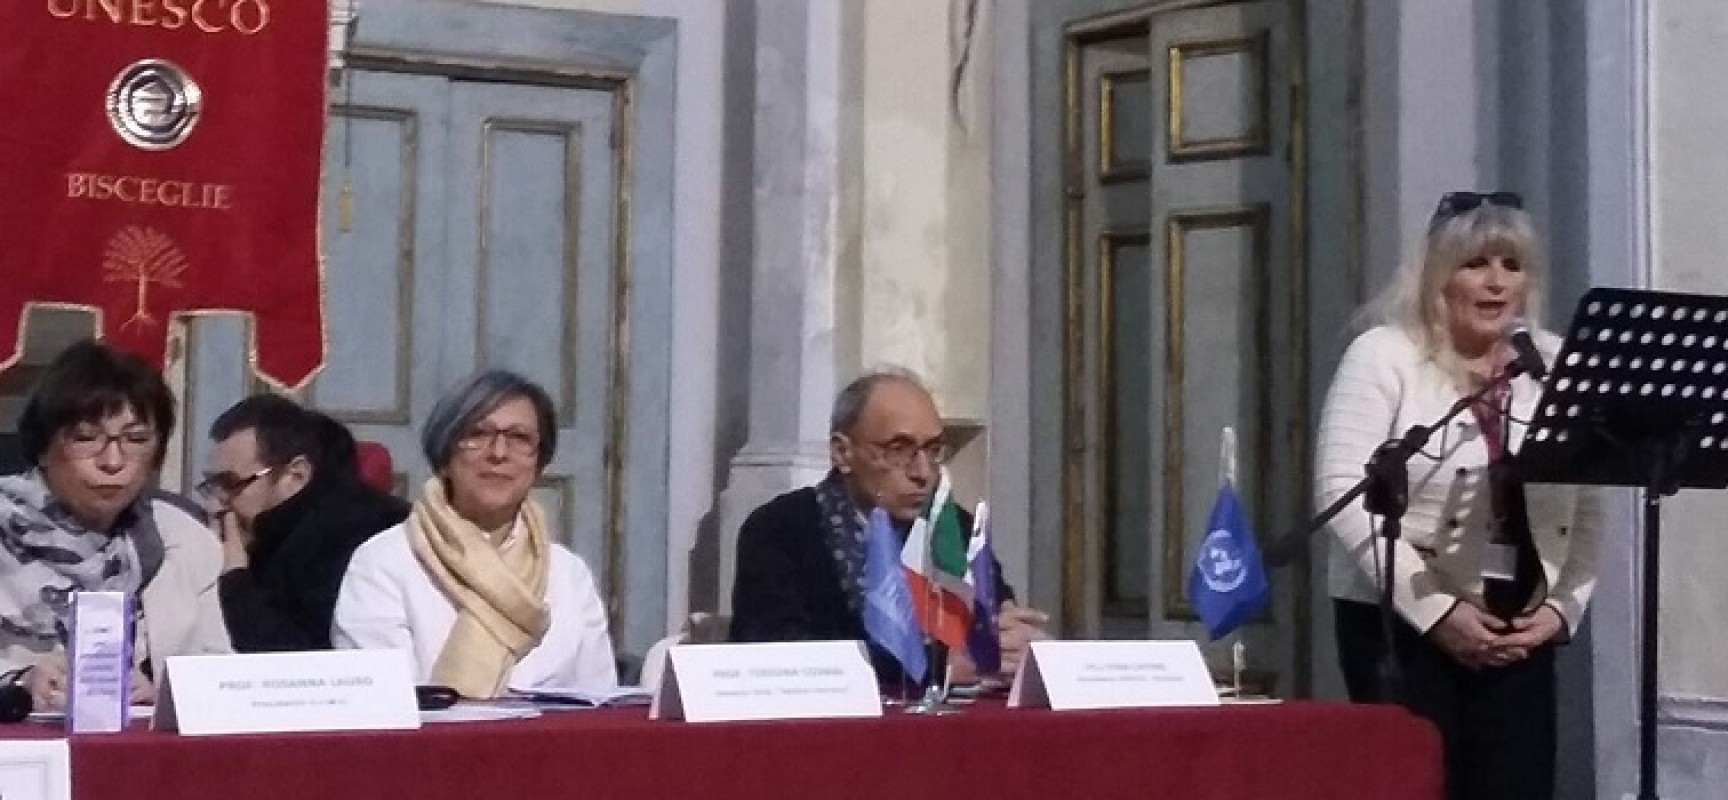 Unesco Bisceglie, Pinuccio Rana nominato socio onorario